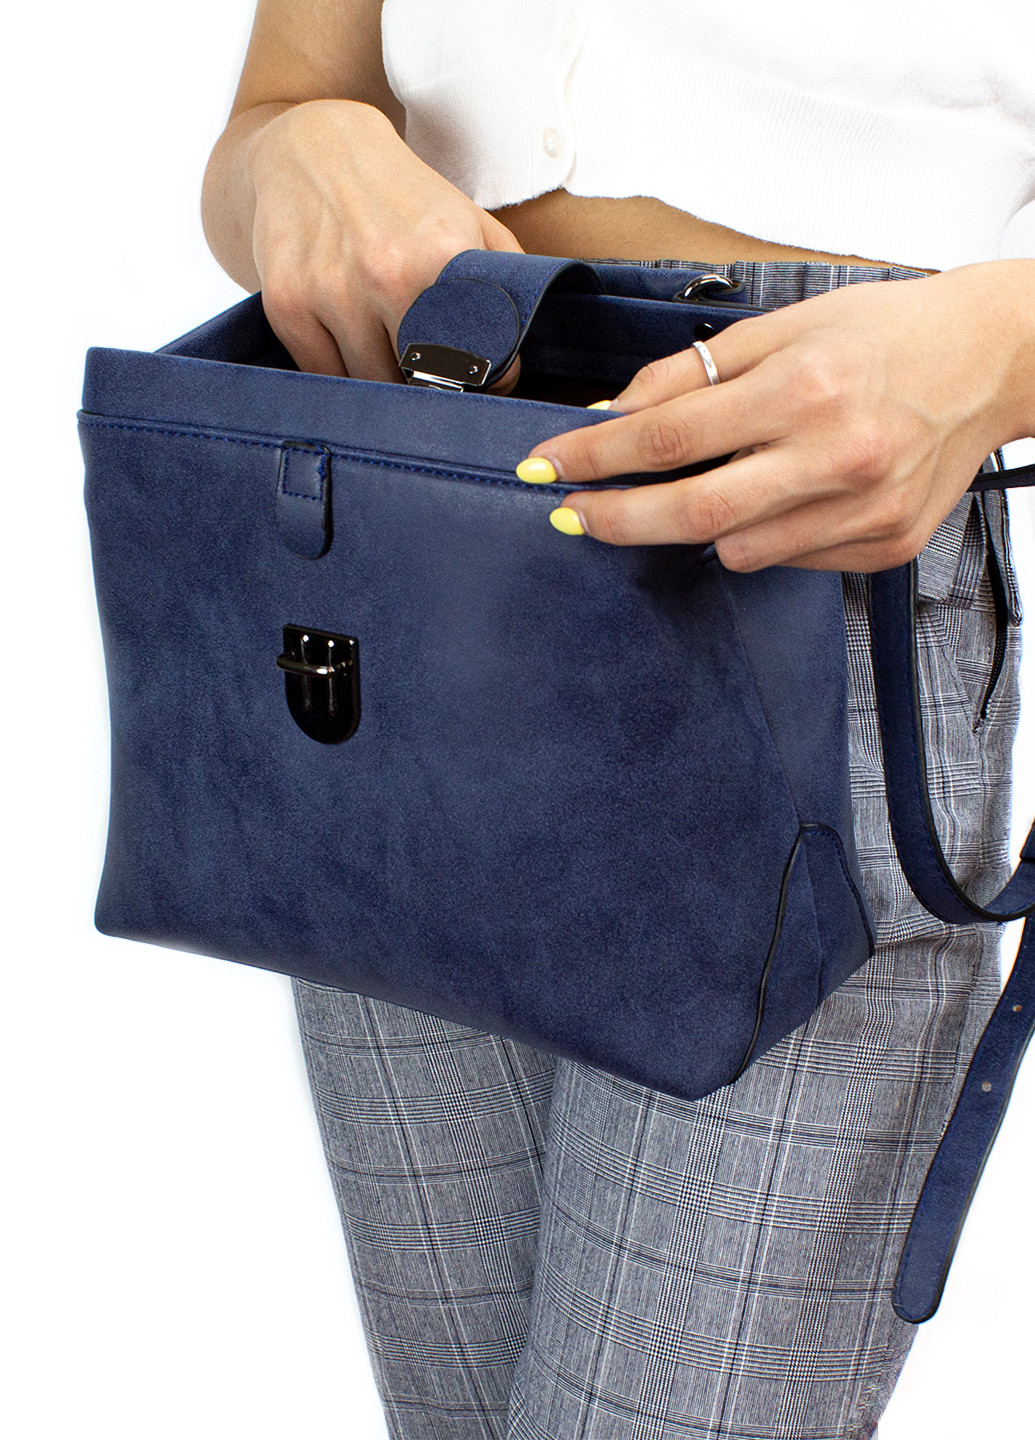 Женская сумка из качественной экокожи, темно-синяя Corze ab002 (225538352)